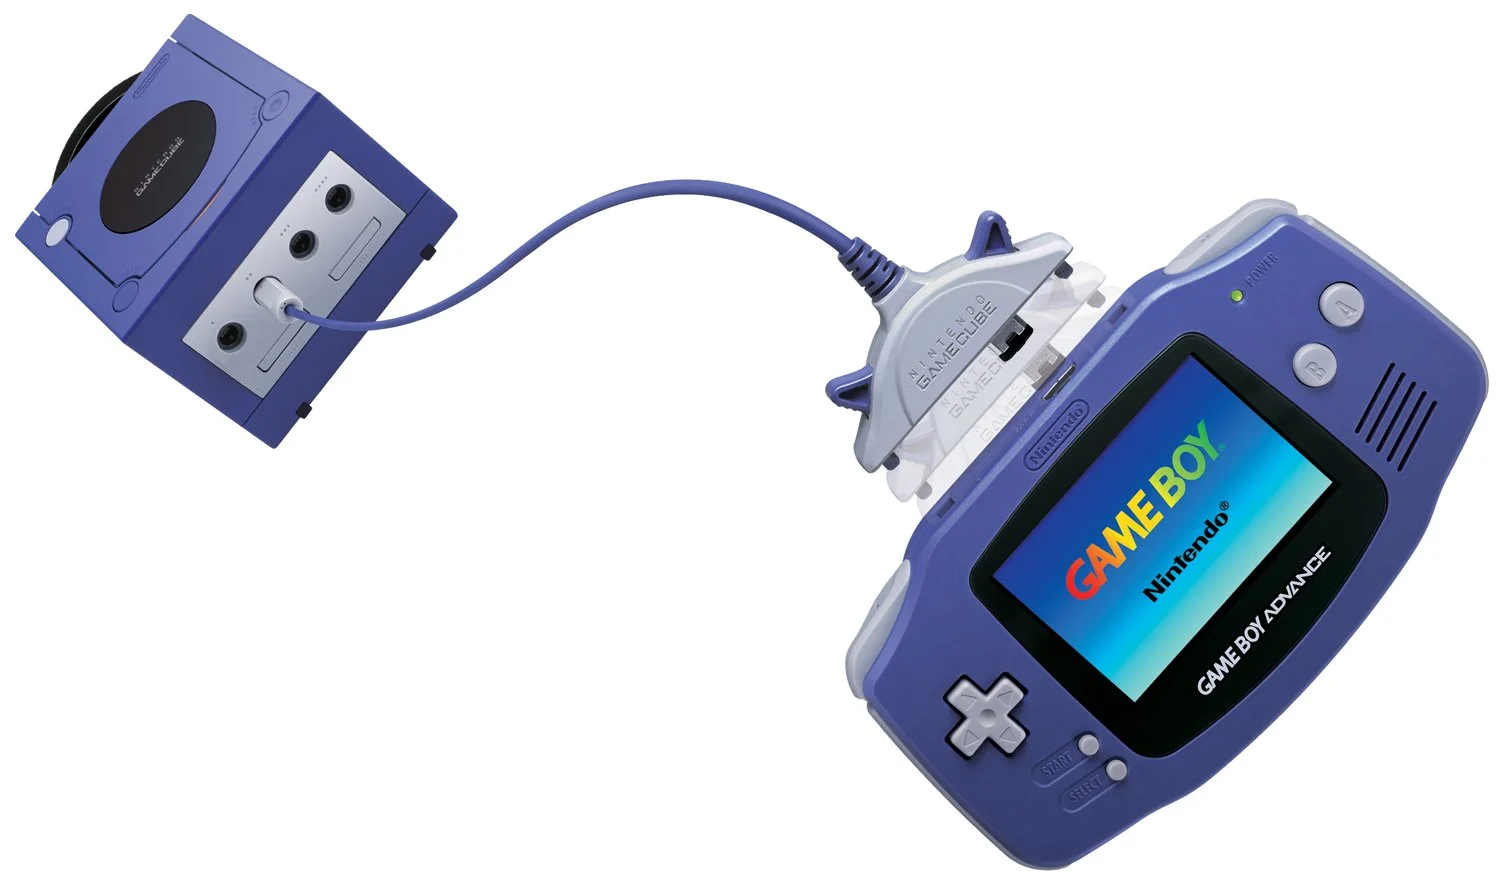 GameCube + GameBoy Advance. К приставке можно было подключить GBA, что использовалось в некоторых играх, таких как Zelda The Wind Waker. Позже Sony поступит также со своей PS Vita